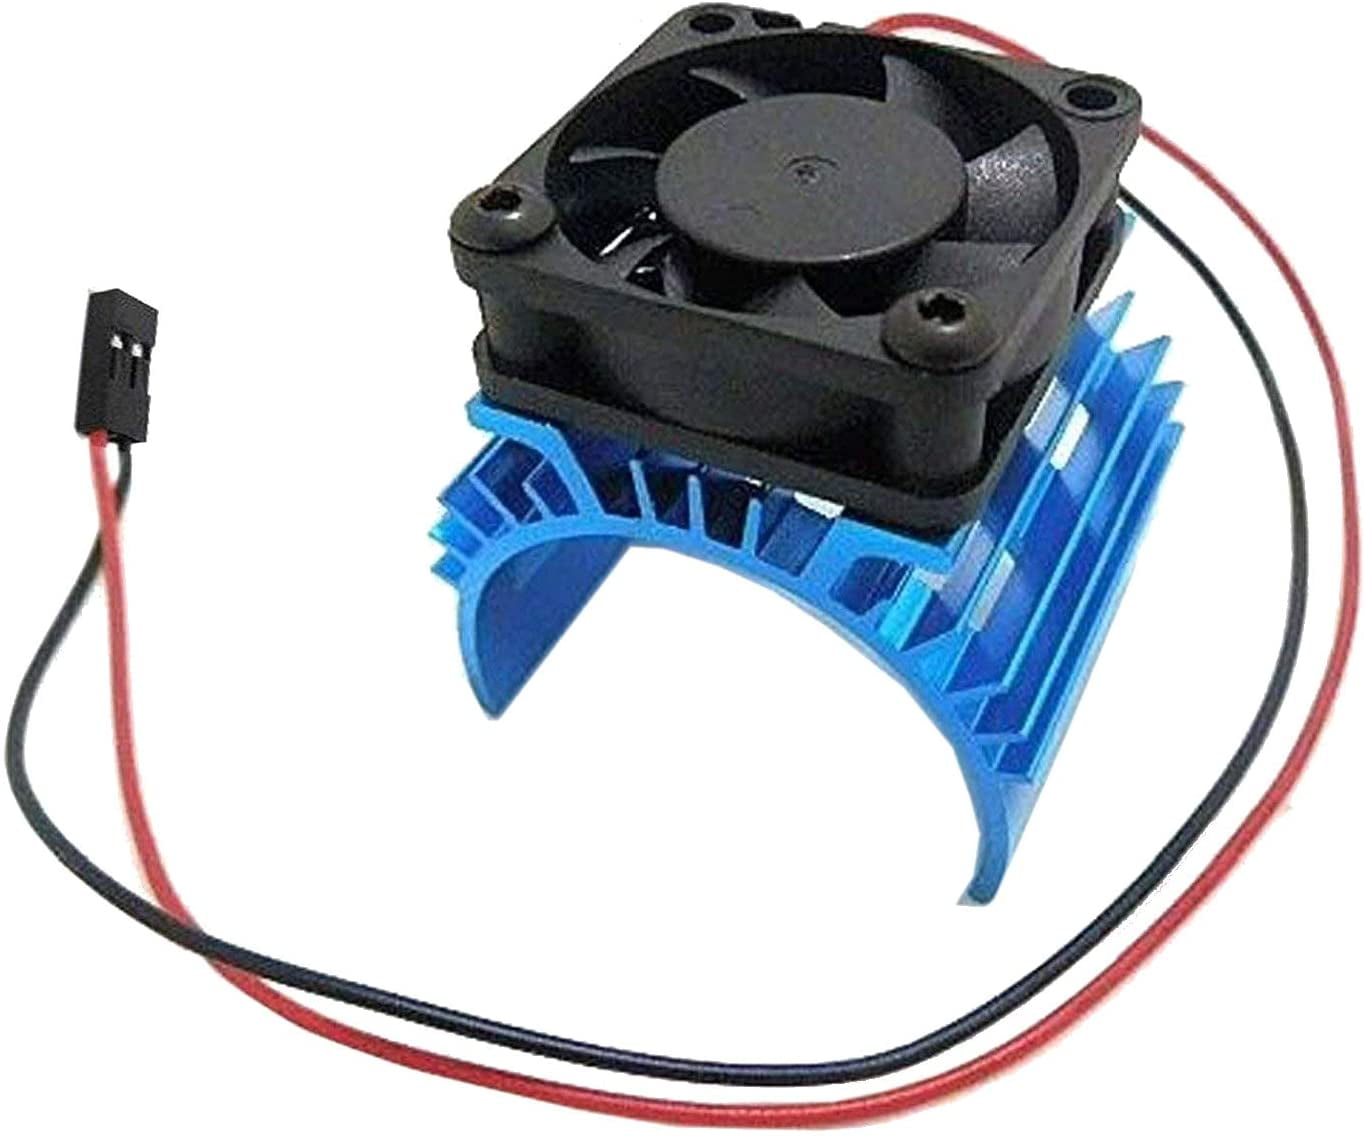 RC Cooling Fan Brushless Motor Heatsink Cover for 1:10 RC Car 540 550 3650 Motor